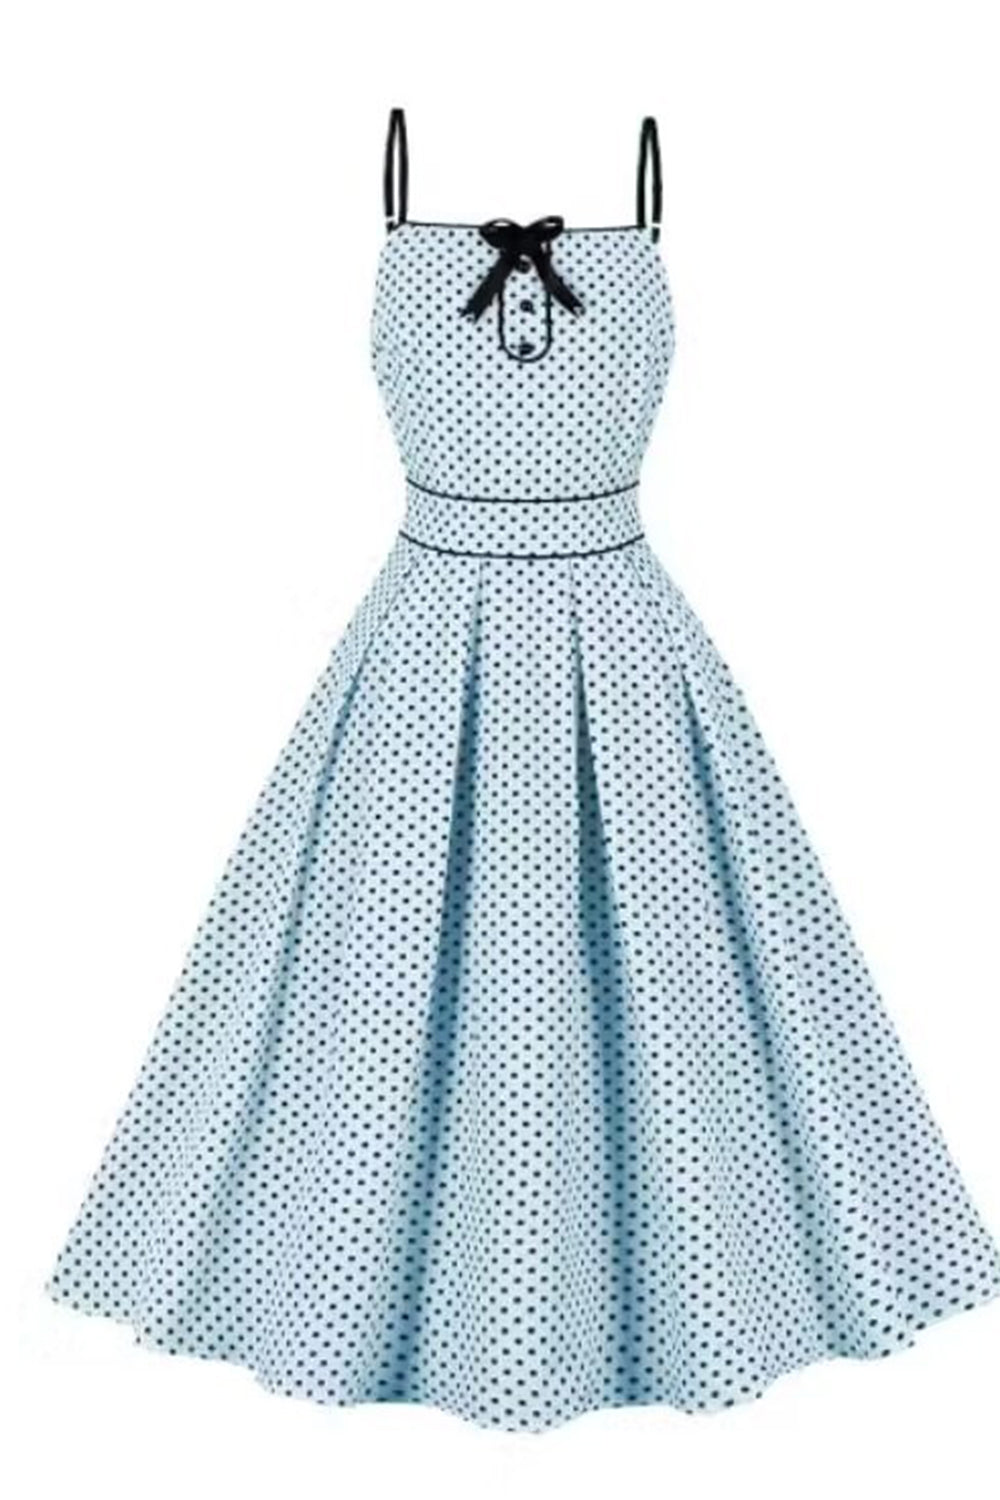 Blaues Polka Dots Pin Up Vintage Kleid aus den 1950er Jahren